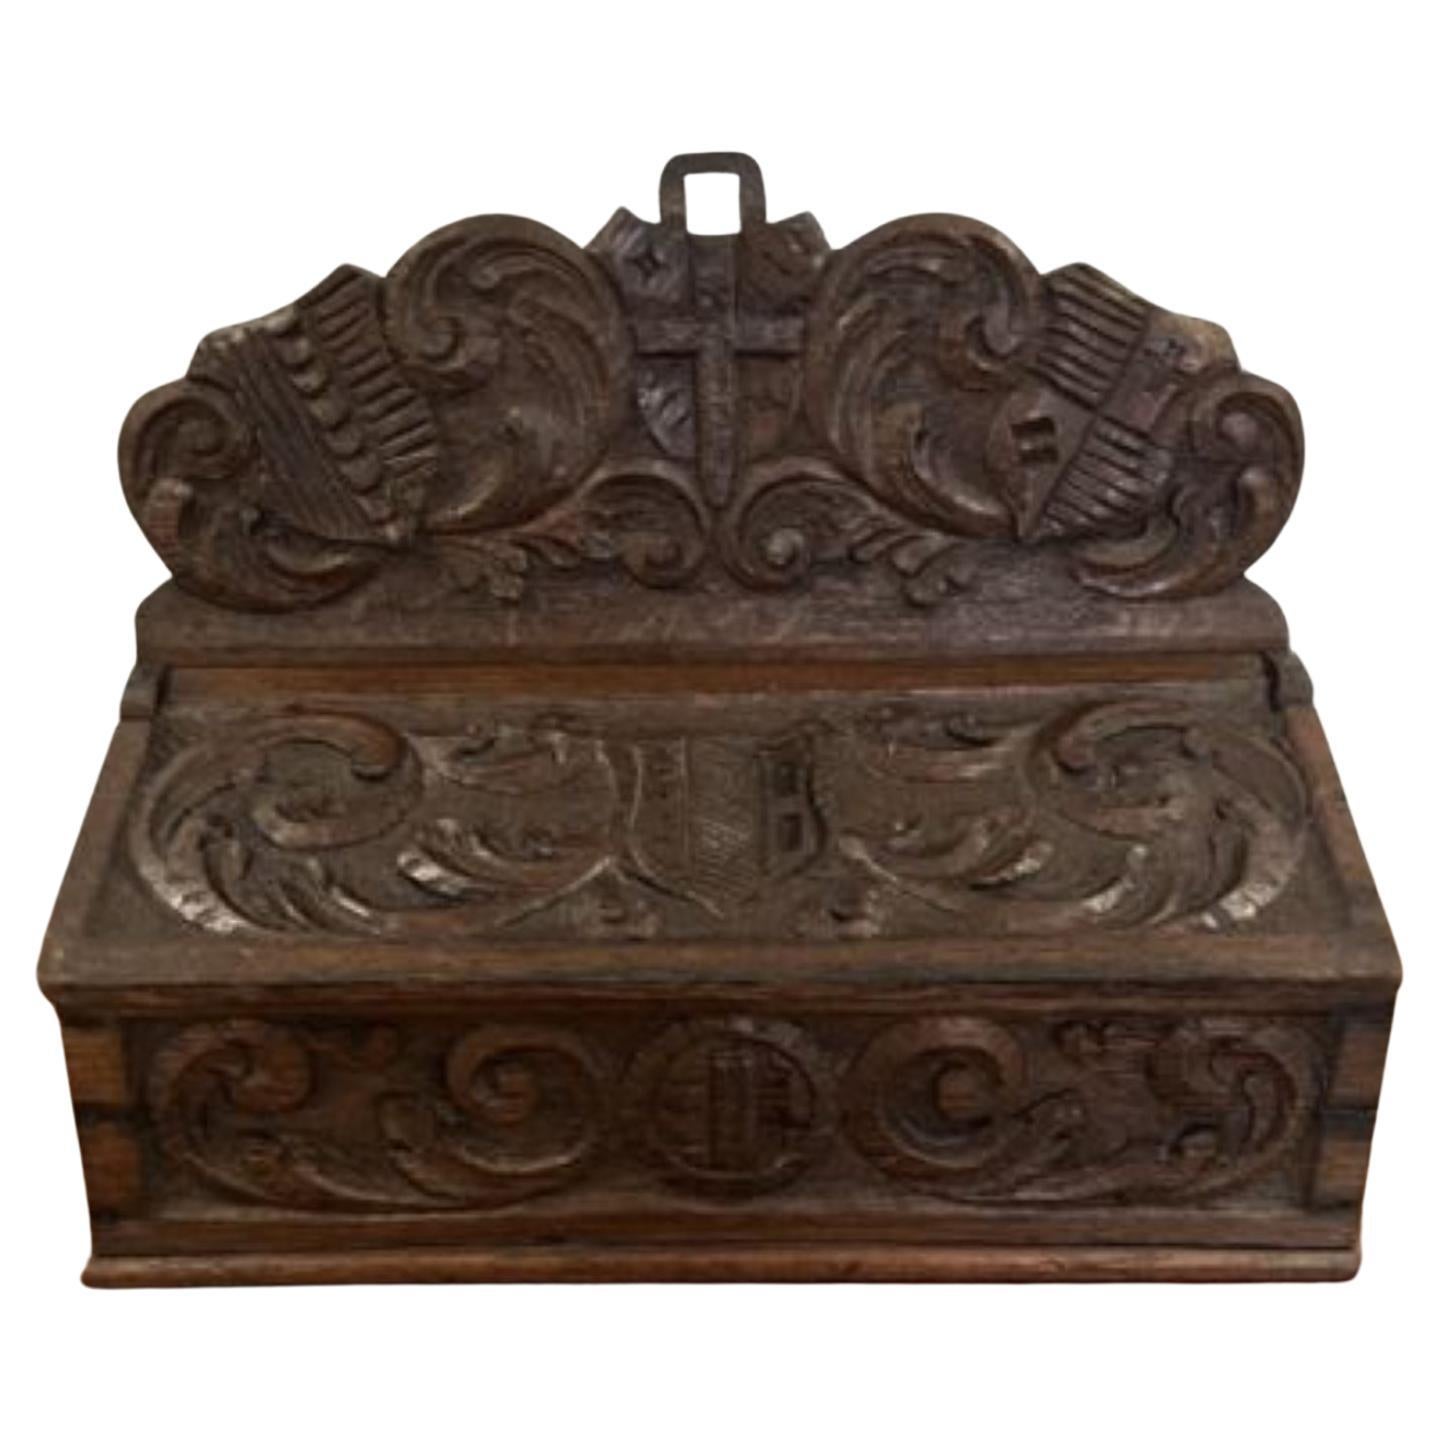 Hochwertiger antiker, geschnitzter Kerzenkasten aus Eiche im viktorianischen Stil